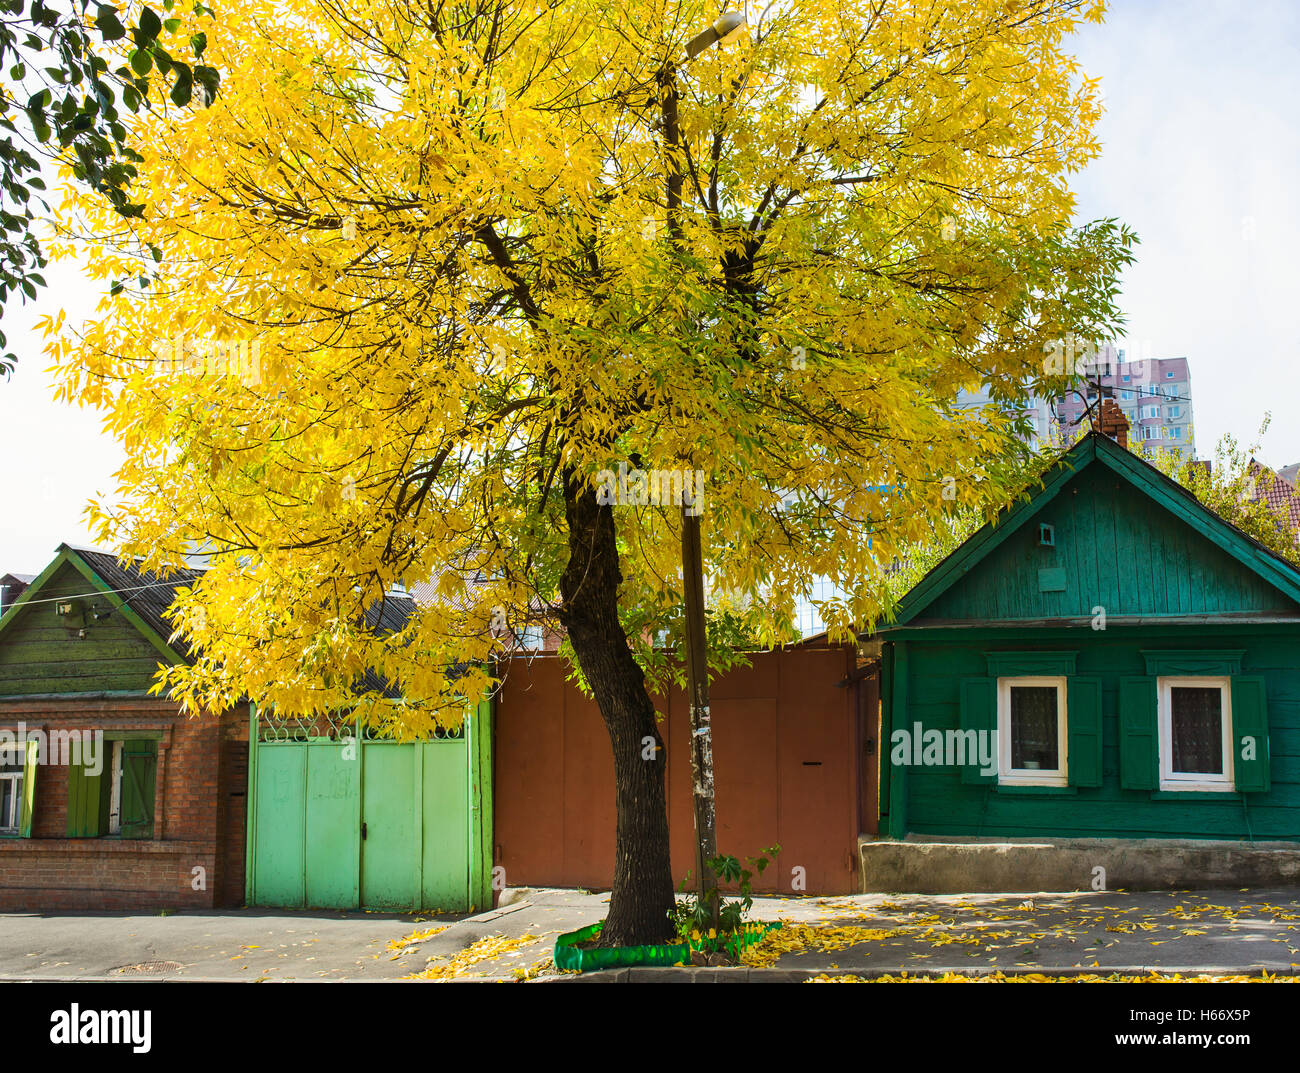 Photo of yellow autumn tree on city street Stock Photo